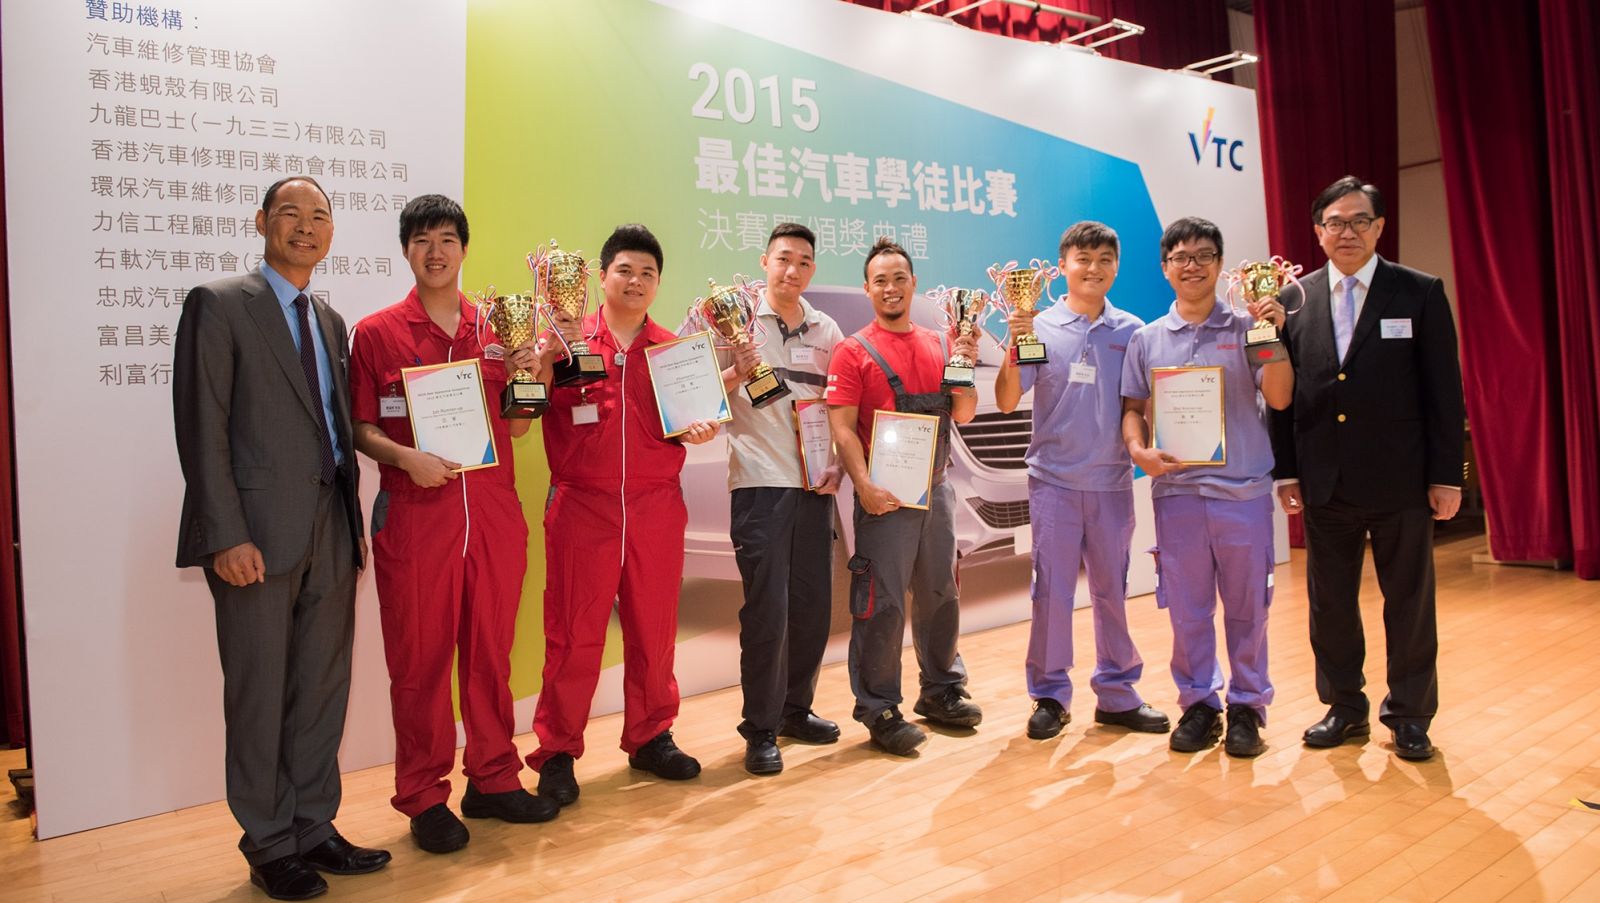 2015最佳汽車學徒比賽　展示專業修車技術
優勝者將赴上海交流觀摩